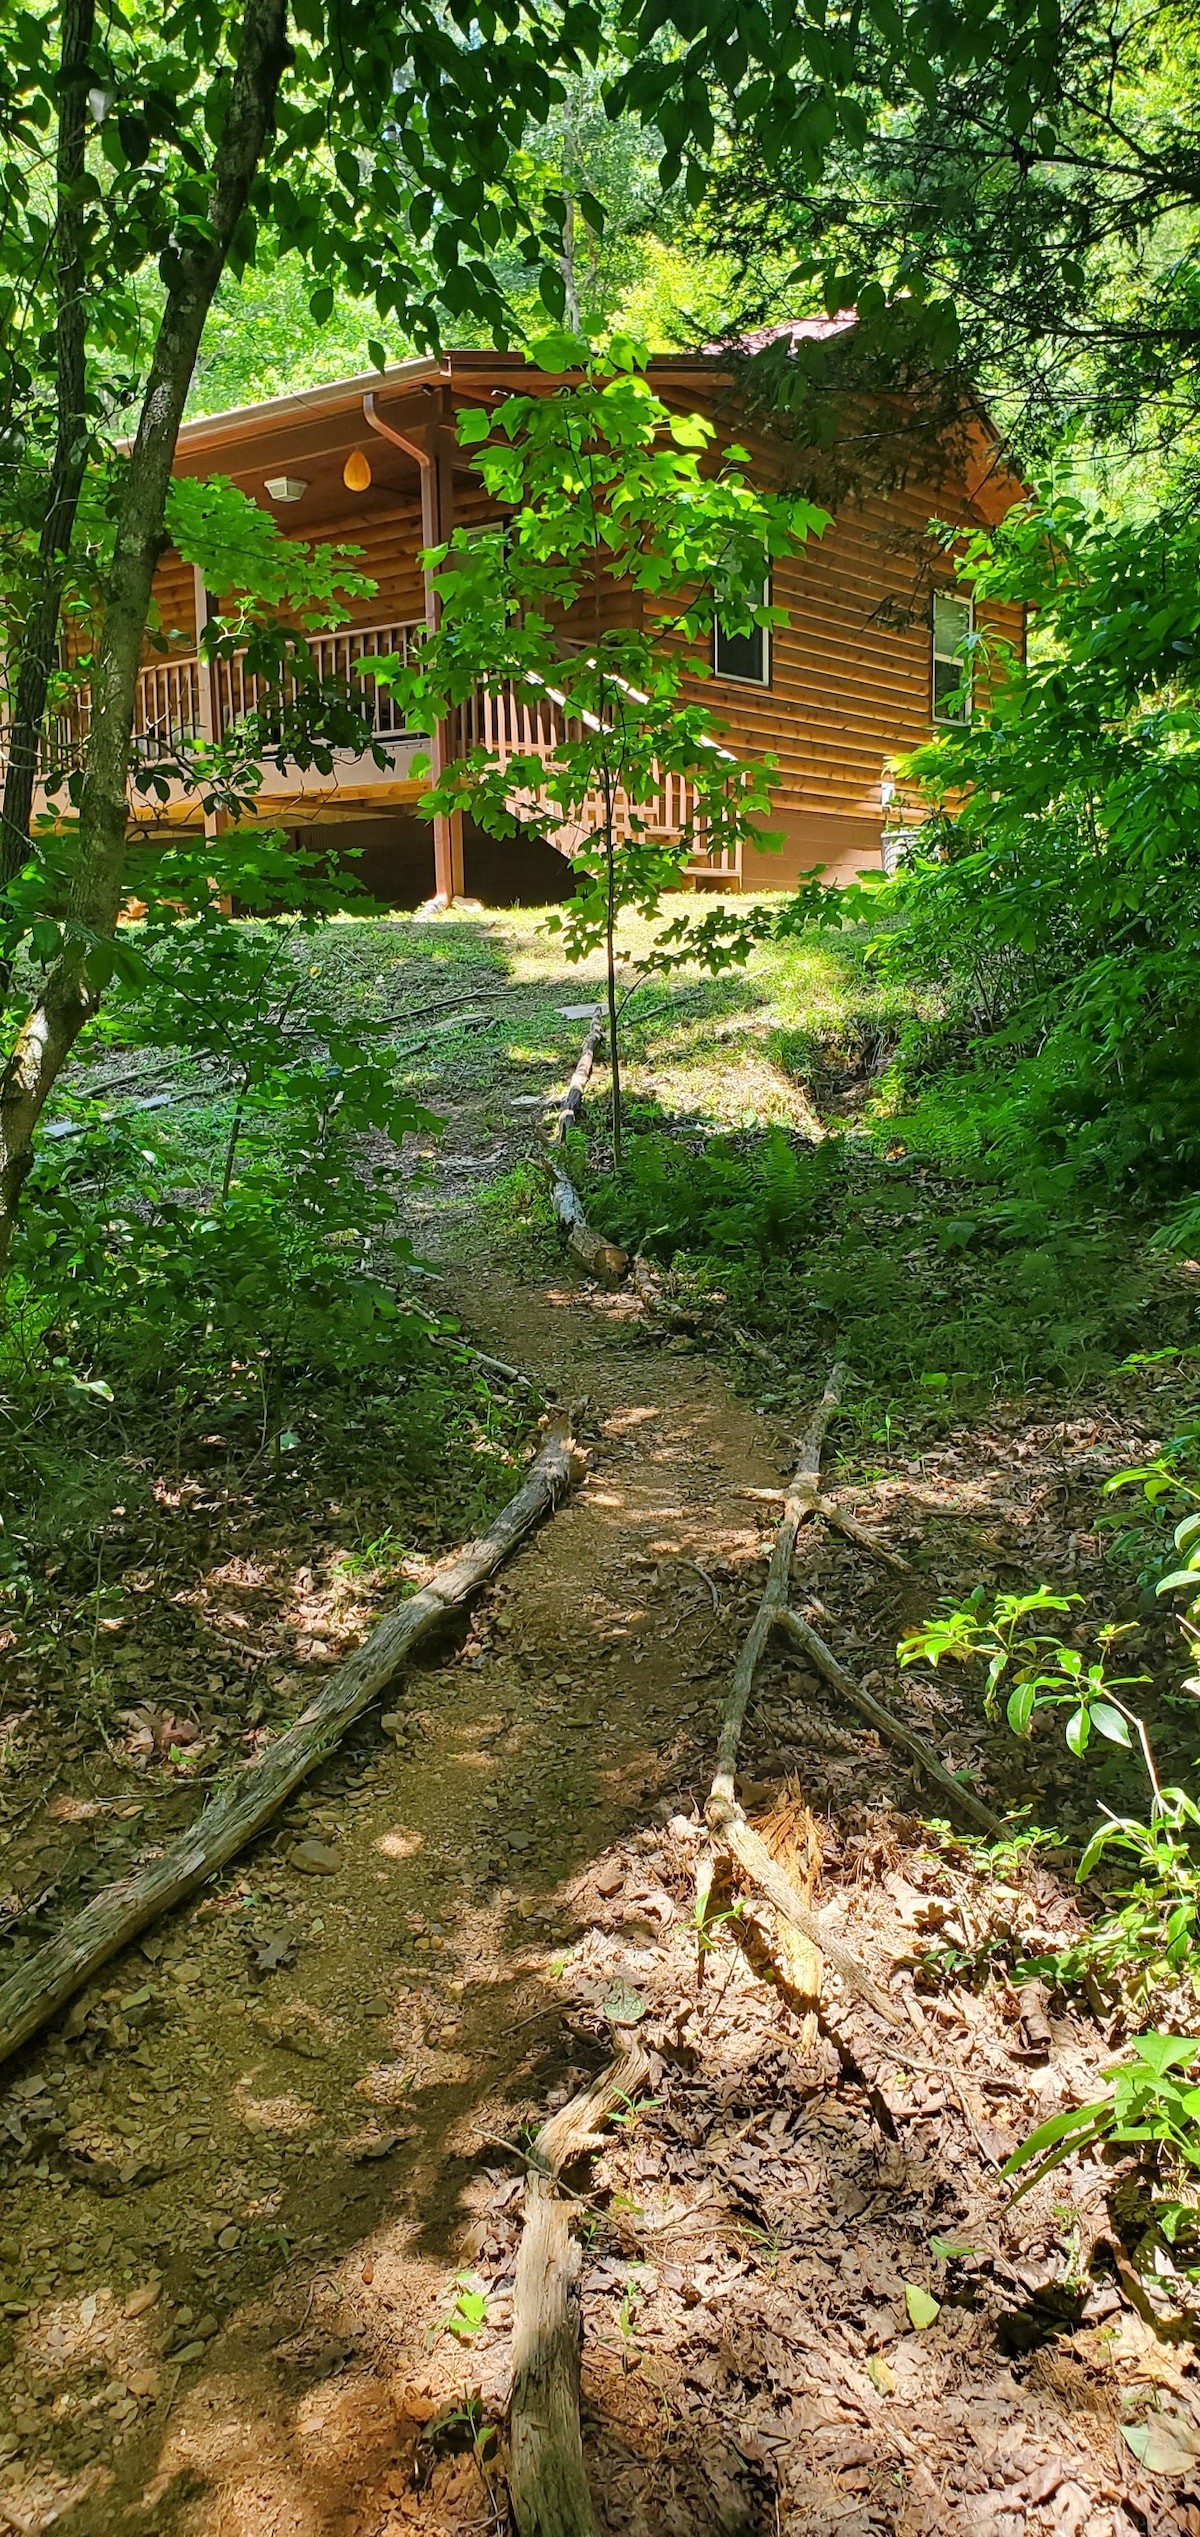 Luna 's Creekside Cabin - Murphy NC